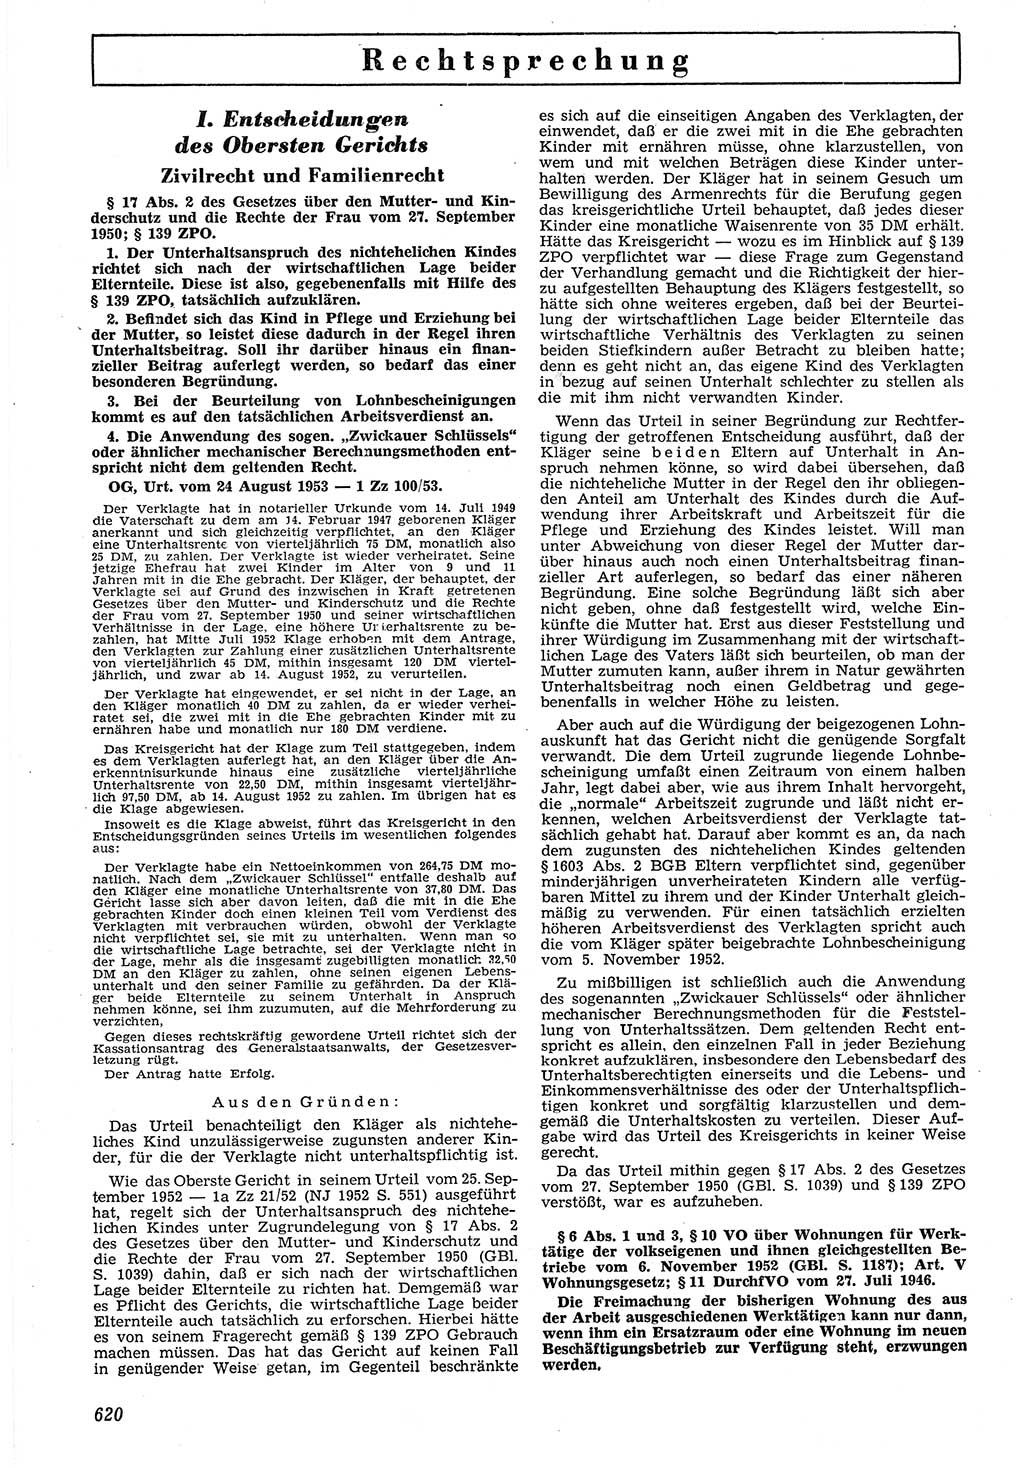 Neue Justiz (NJ), Zeitschrift für Recht und Rechtswissenschaft [Deutsche Demokratische Republik (DDR)], 7. Jahrgang 1953, Seite 620 (NJ DDR 1953, S. 620)